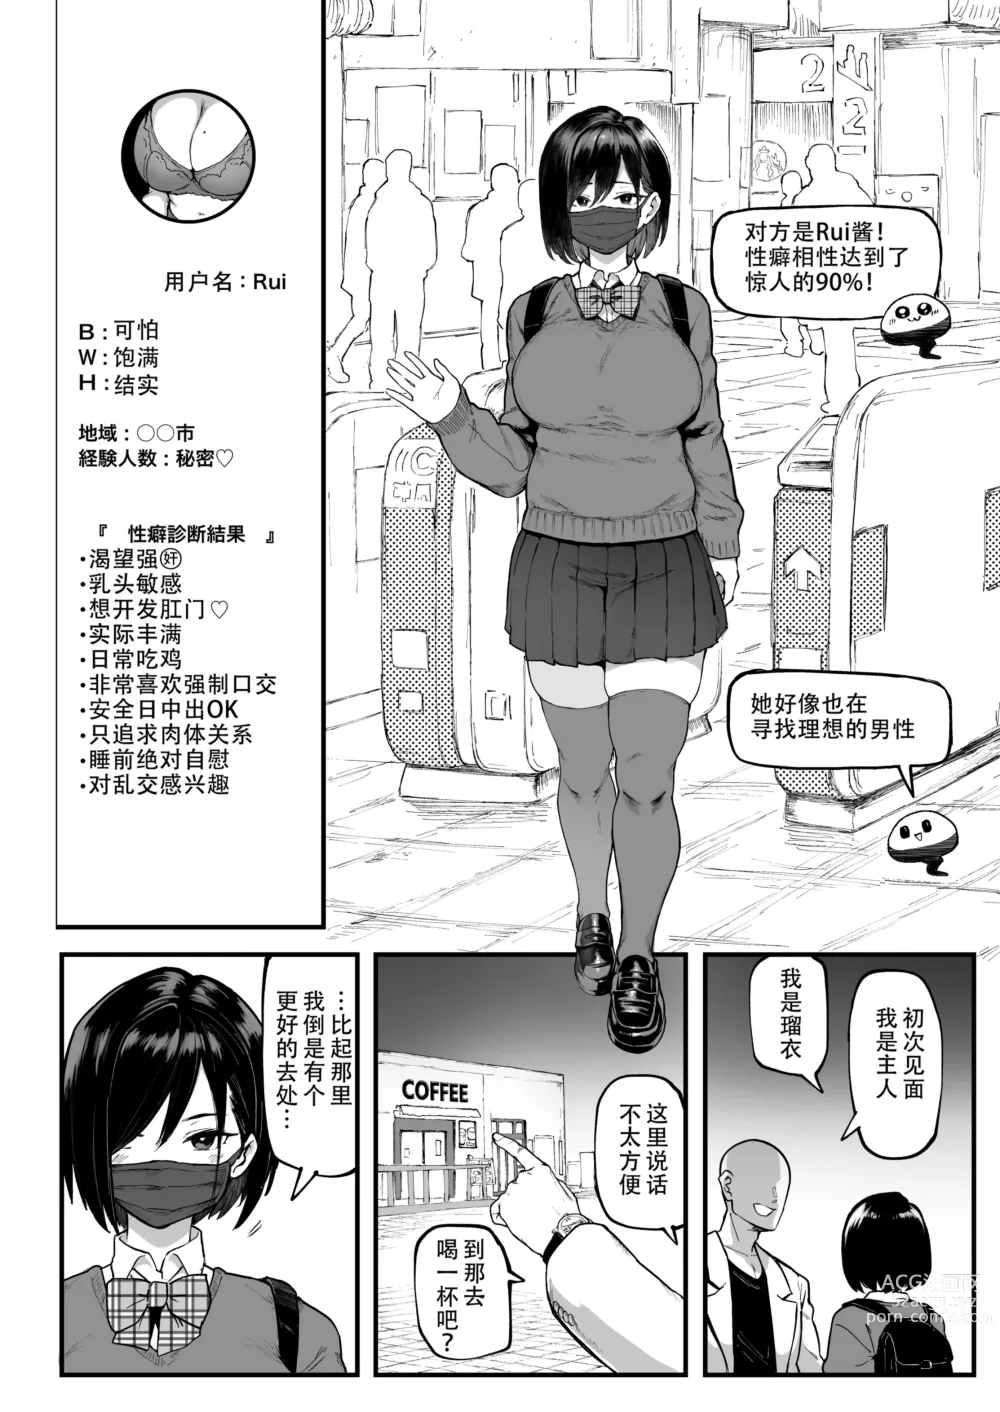 Page 5 of manga 性癖マッチングアプリ ズボプリ